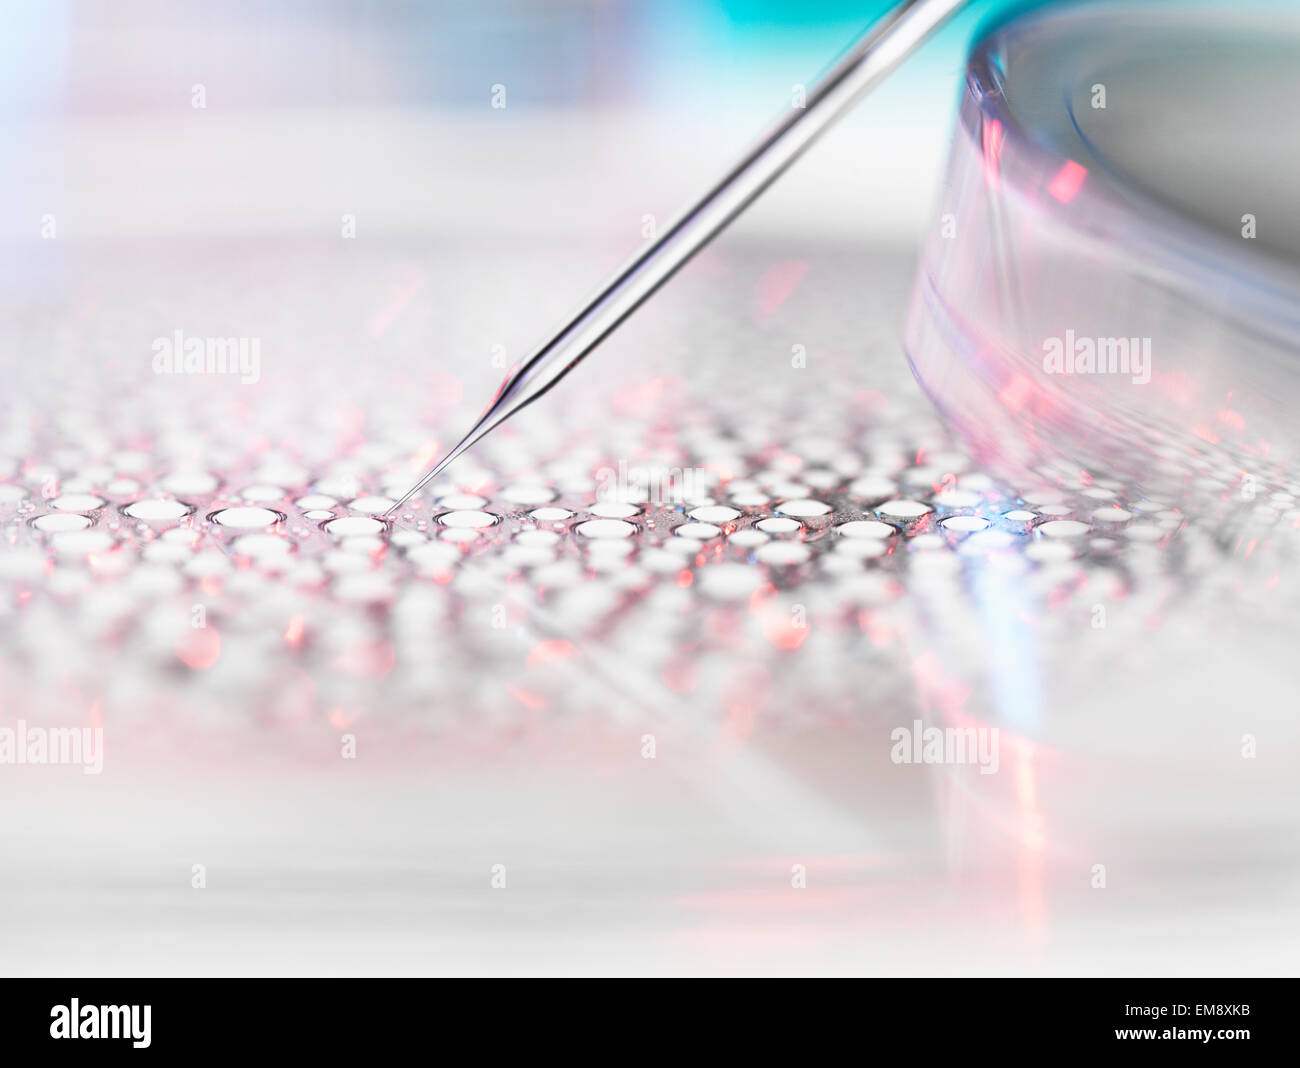 Stammzellforschung, Kerntransfer embryonaler Stammzellen verwendet beim Klonen für medizinische Forschung Stockfoto